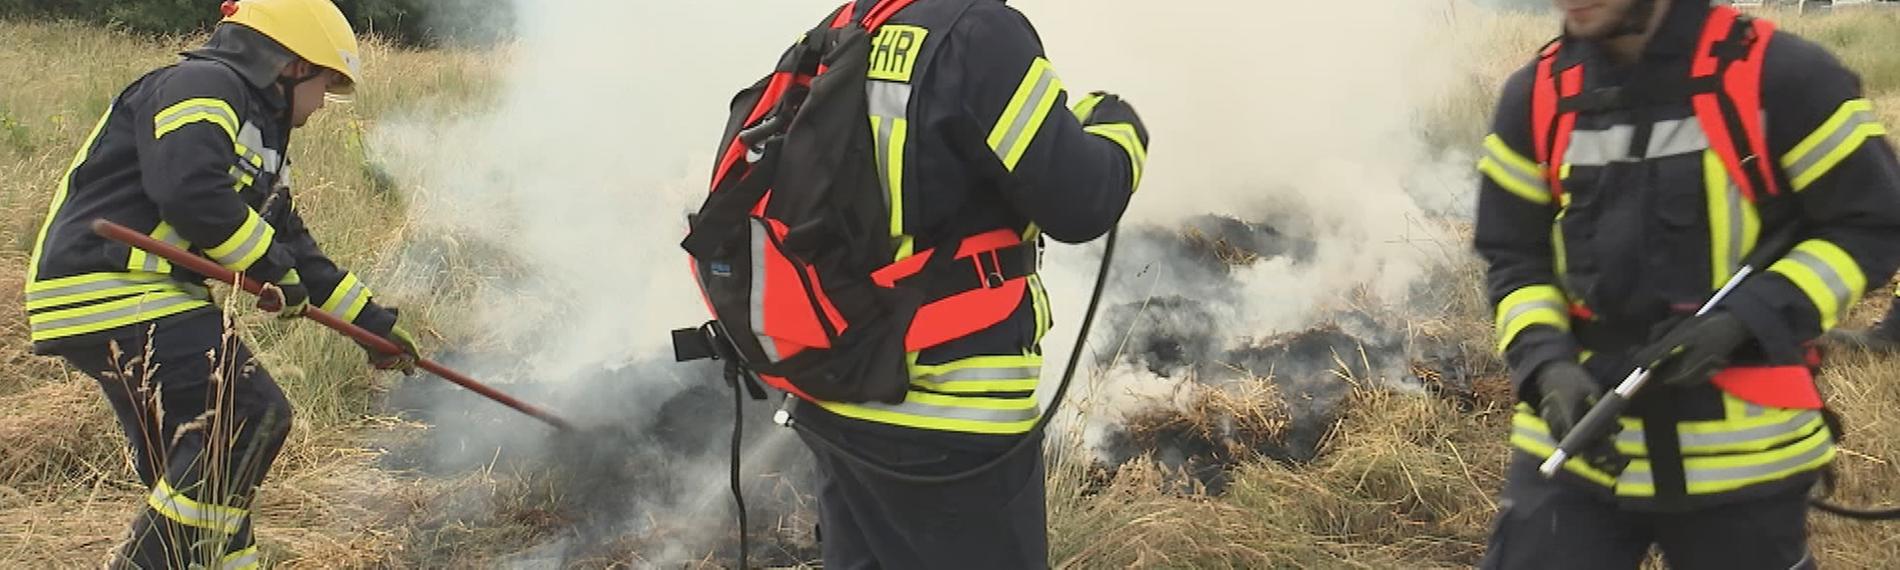 Feuerwehrausbildung: Waldbrandbekämpfung.